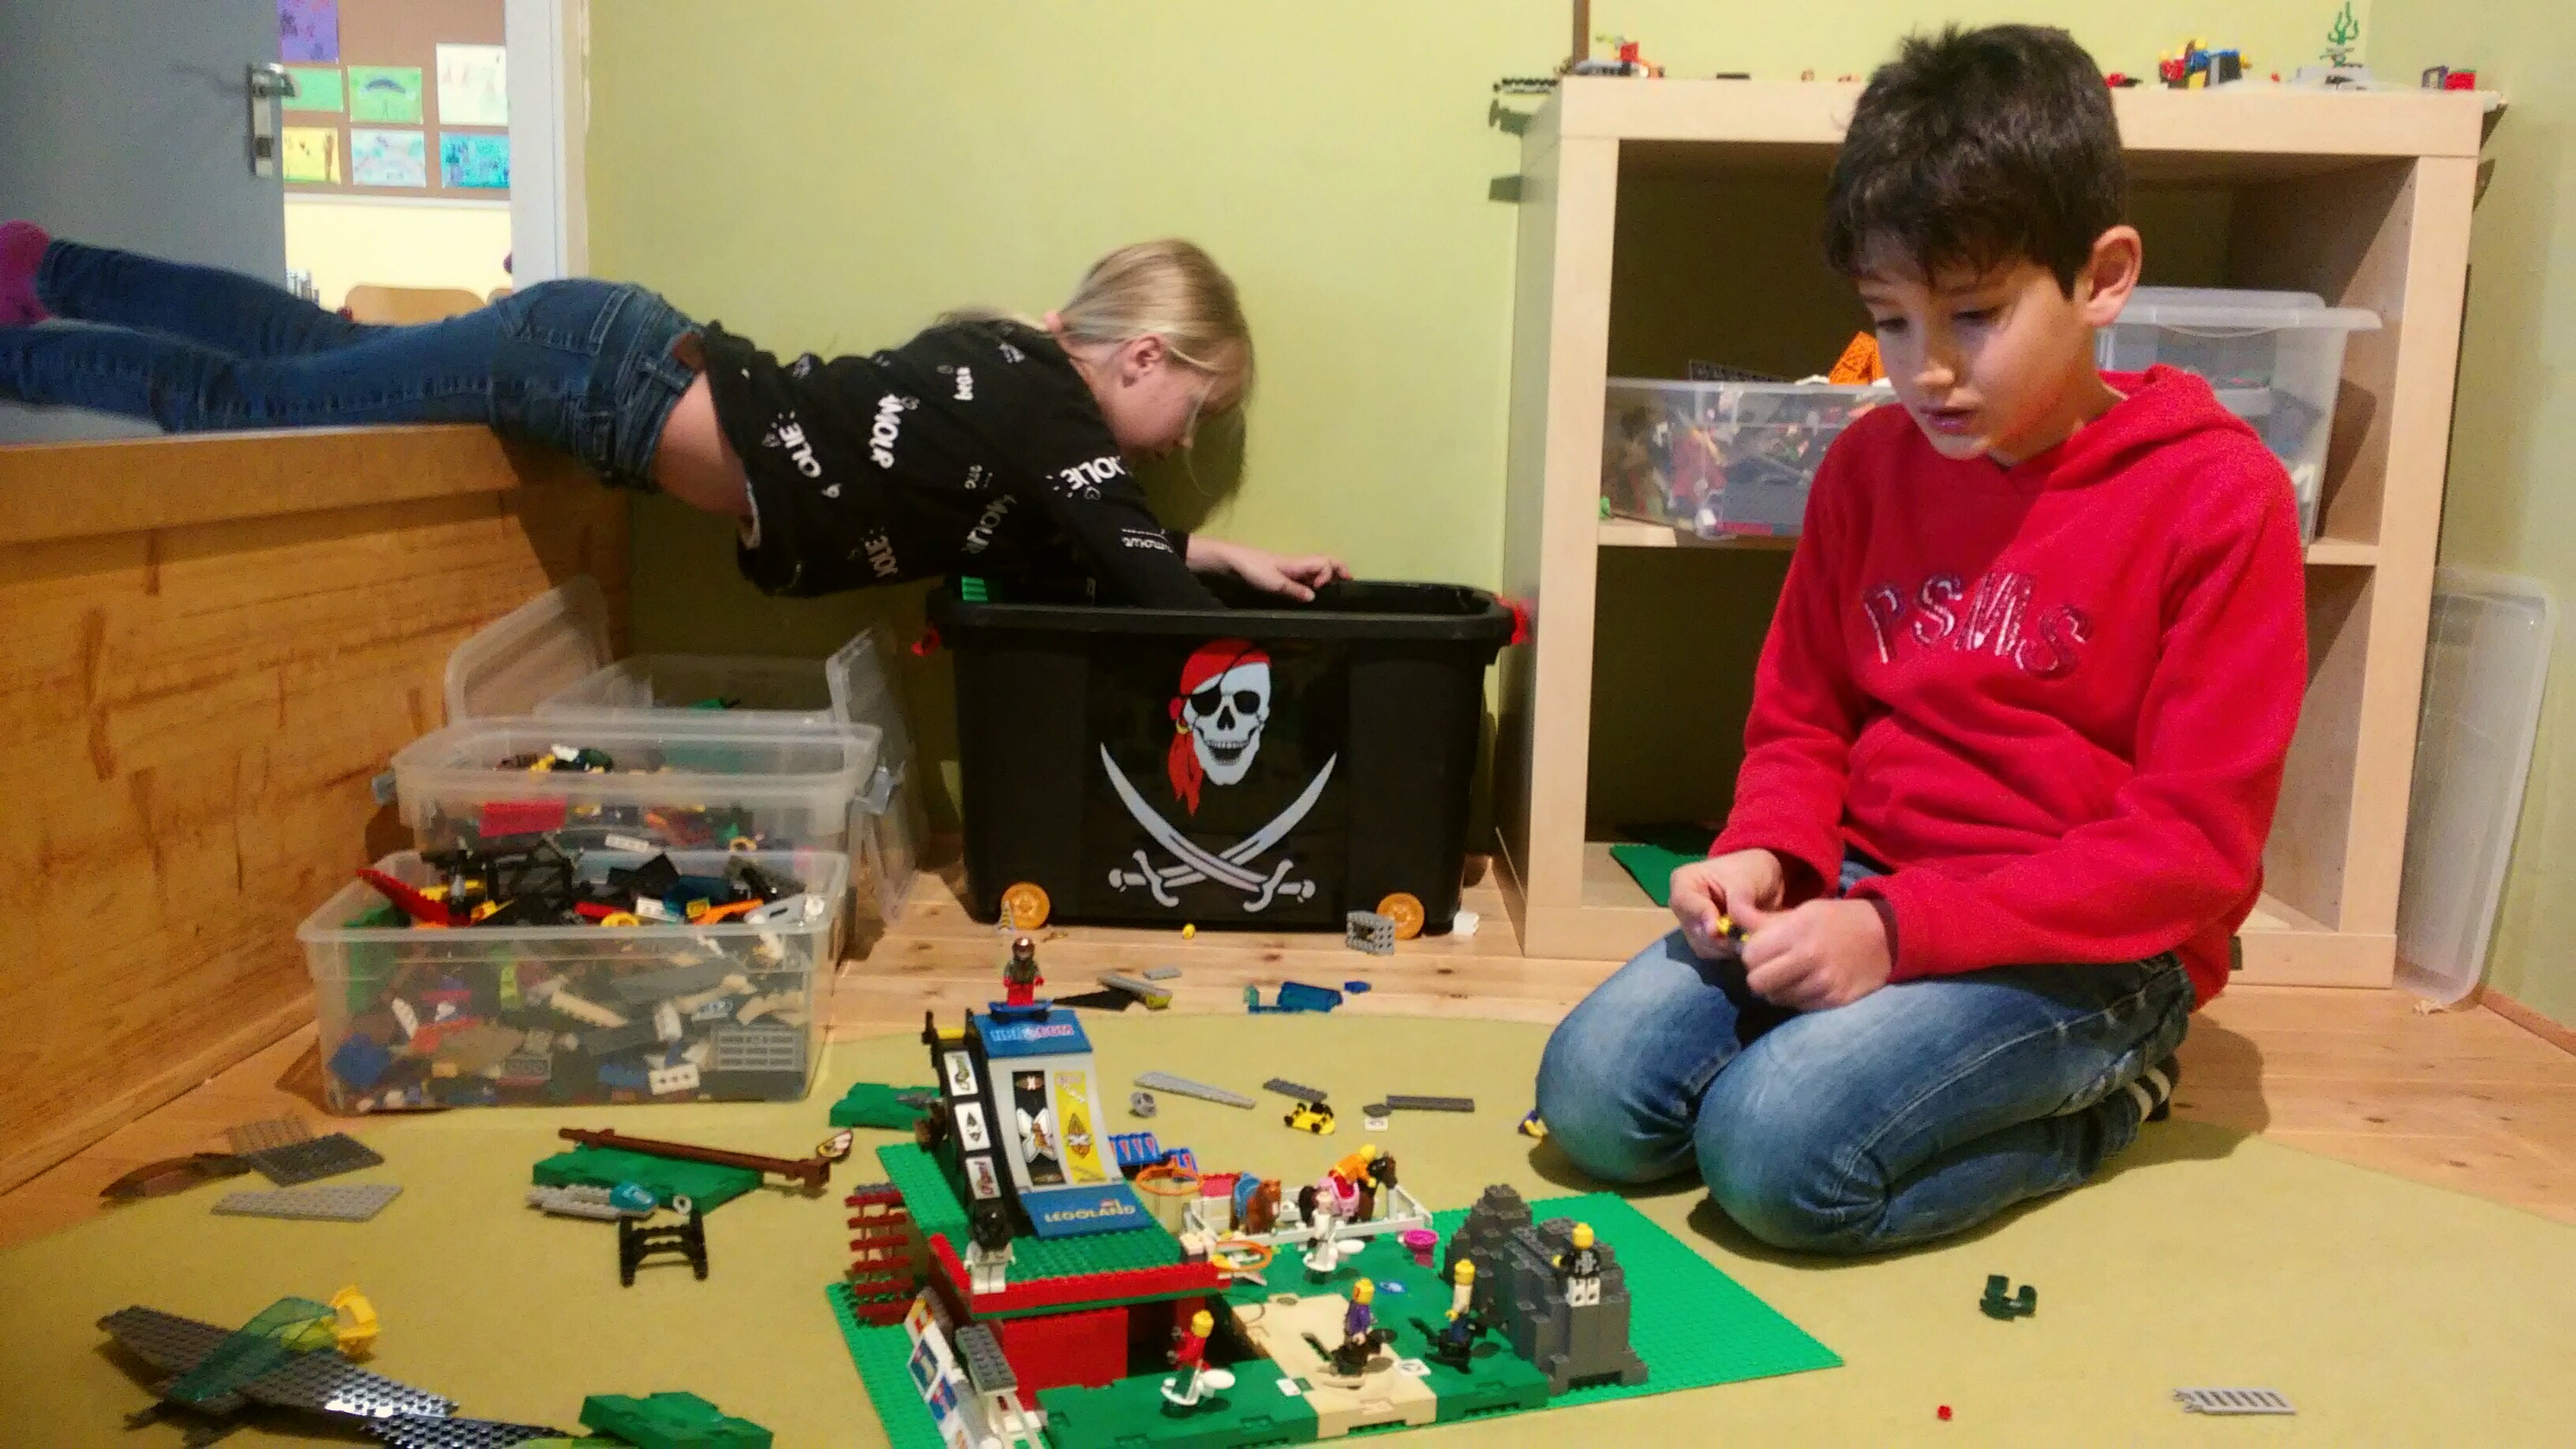 Kinderhort "Bunte Kleckse" Raisting - Lego-Ecke